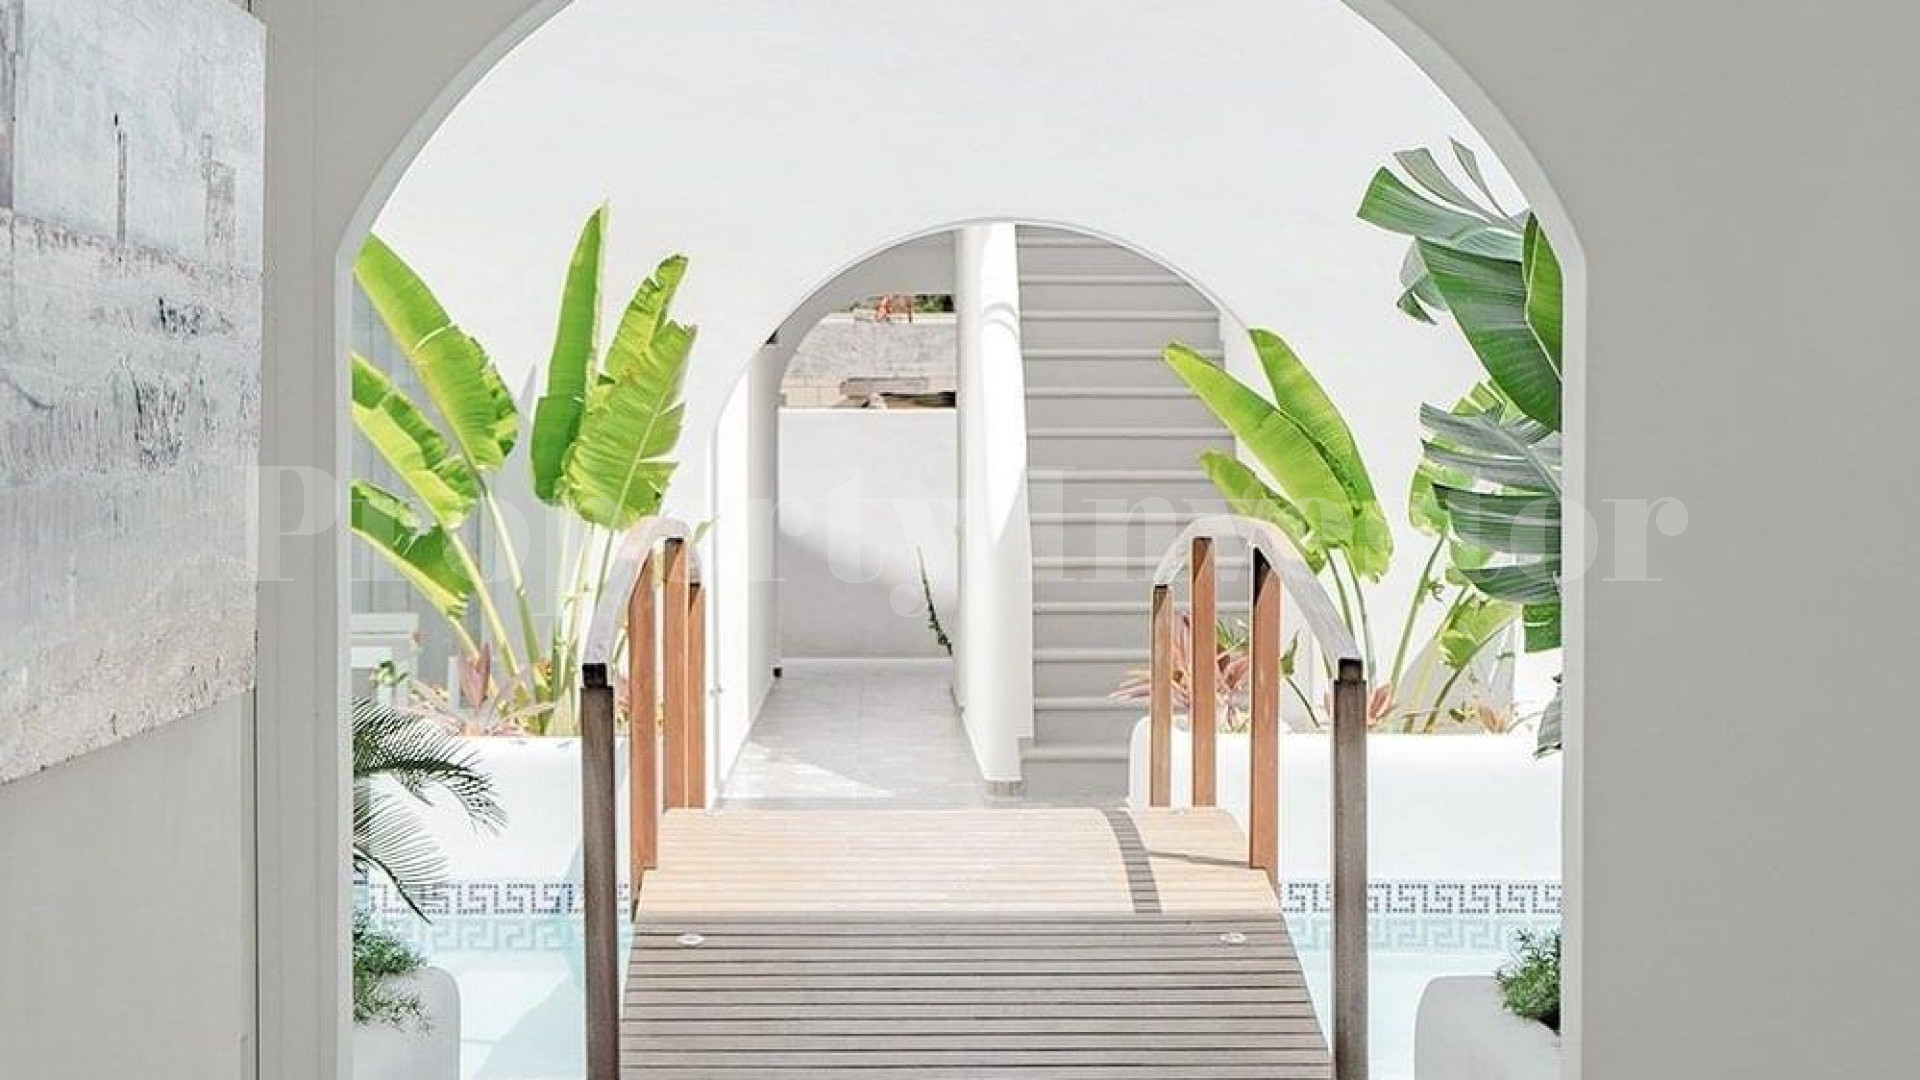 Шик-бутик отель на 20 номеров в популярном развивающемся месте Тулума, Мексика